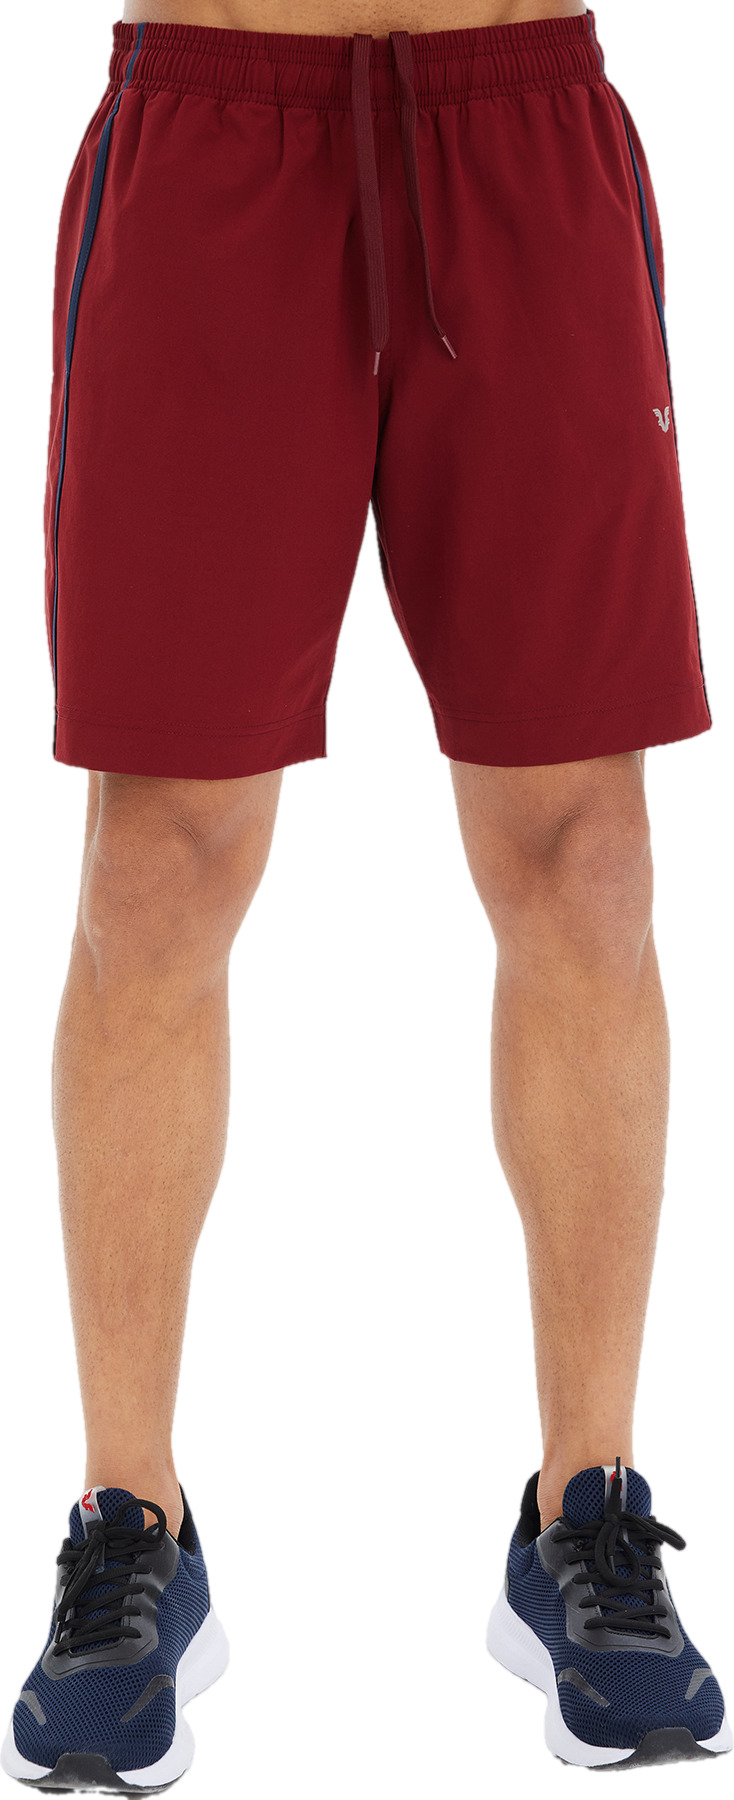 Спортивные шорты мужские Bilcee Men Woven Shorts красные L